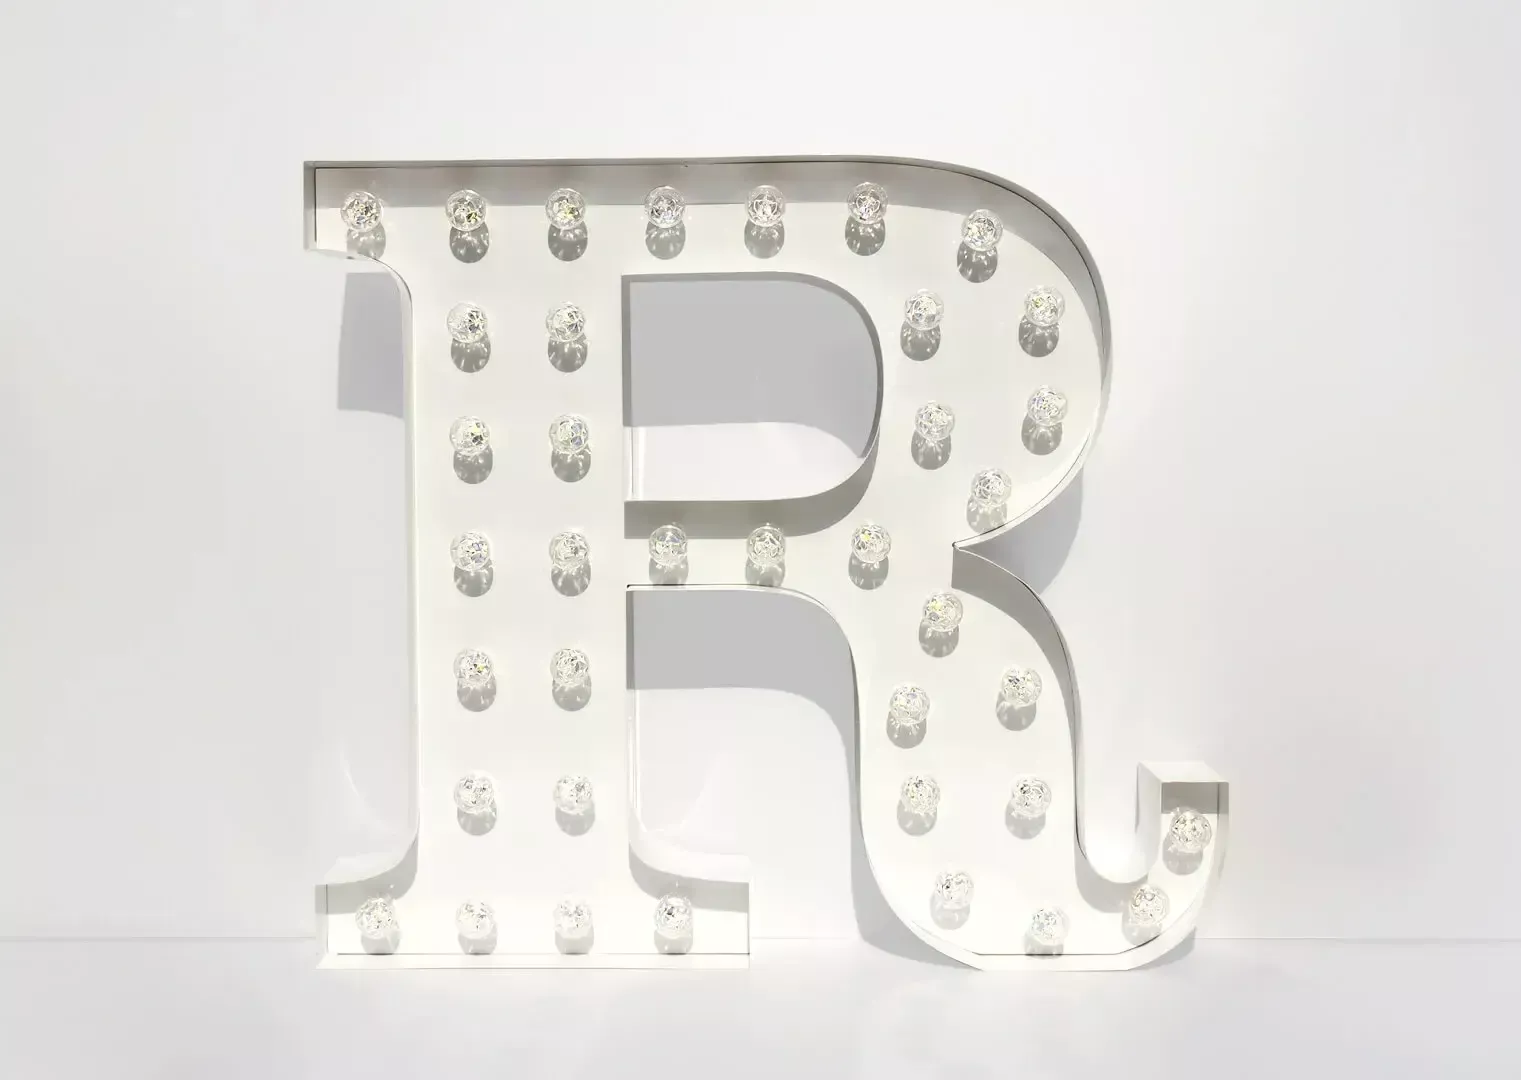 Letter R - luminous letter with white light bulbs